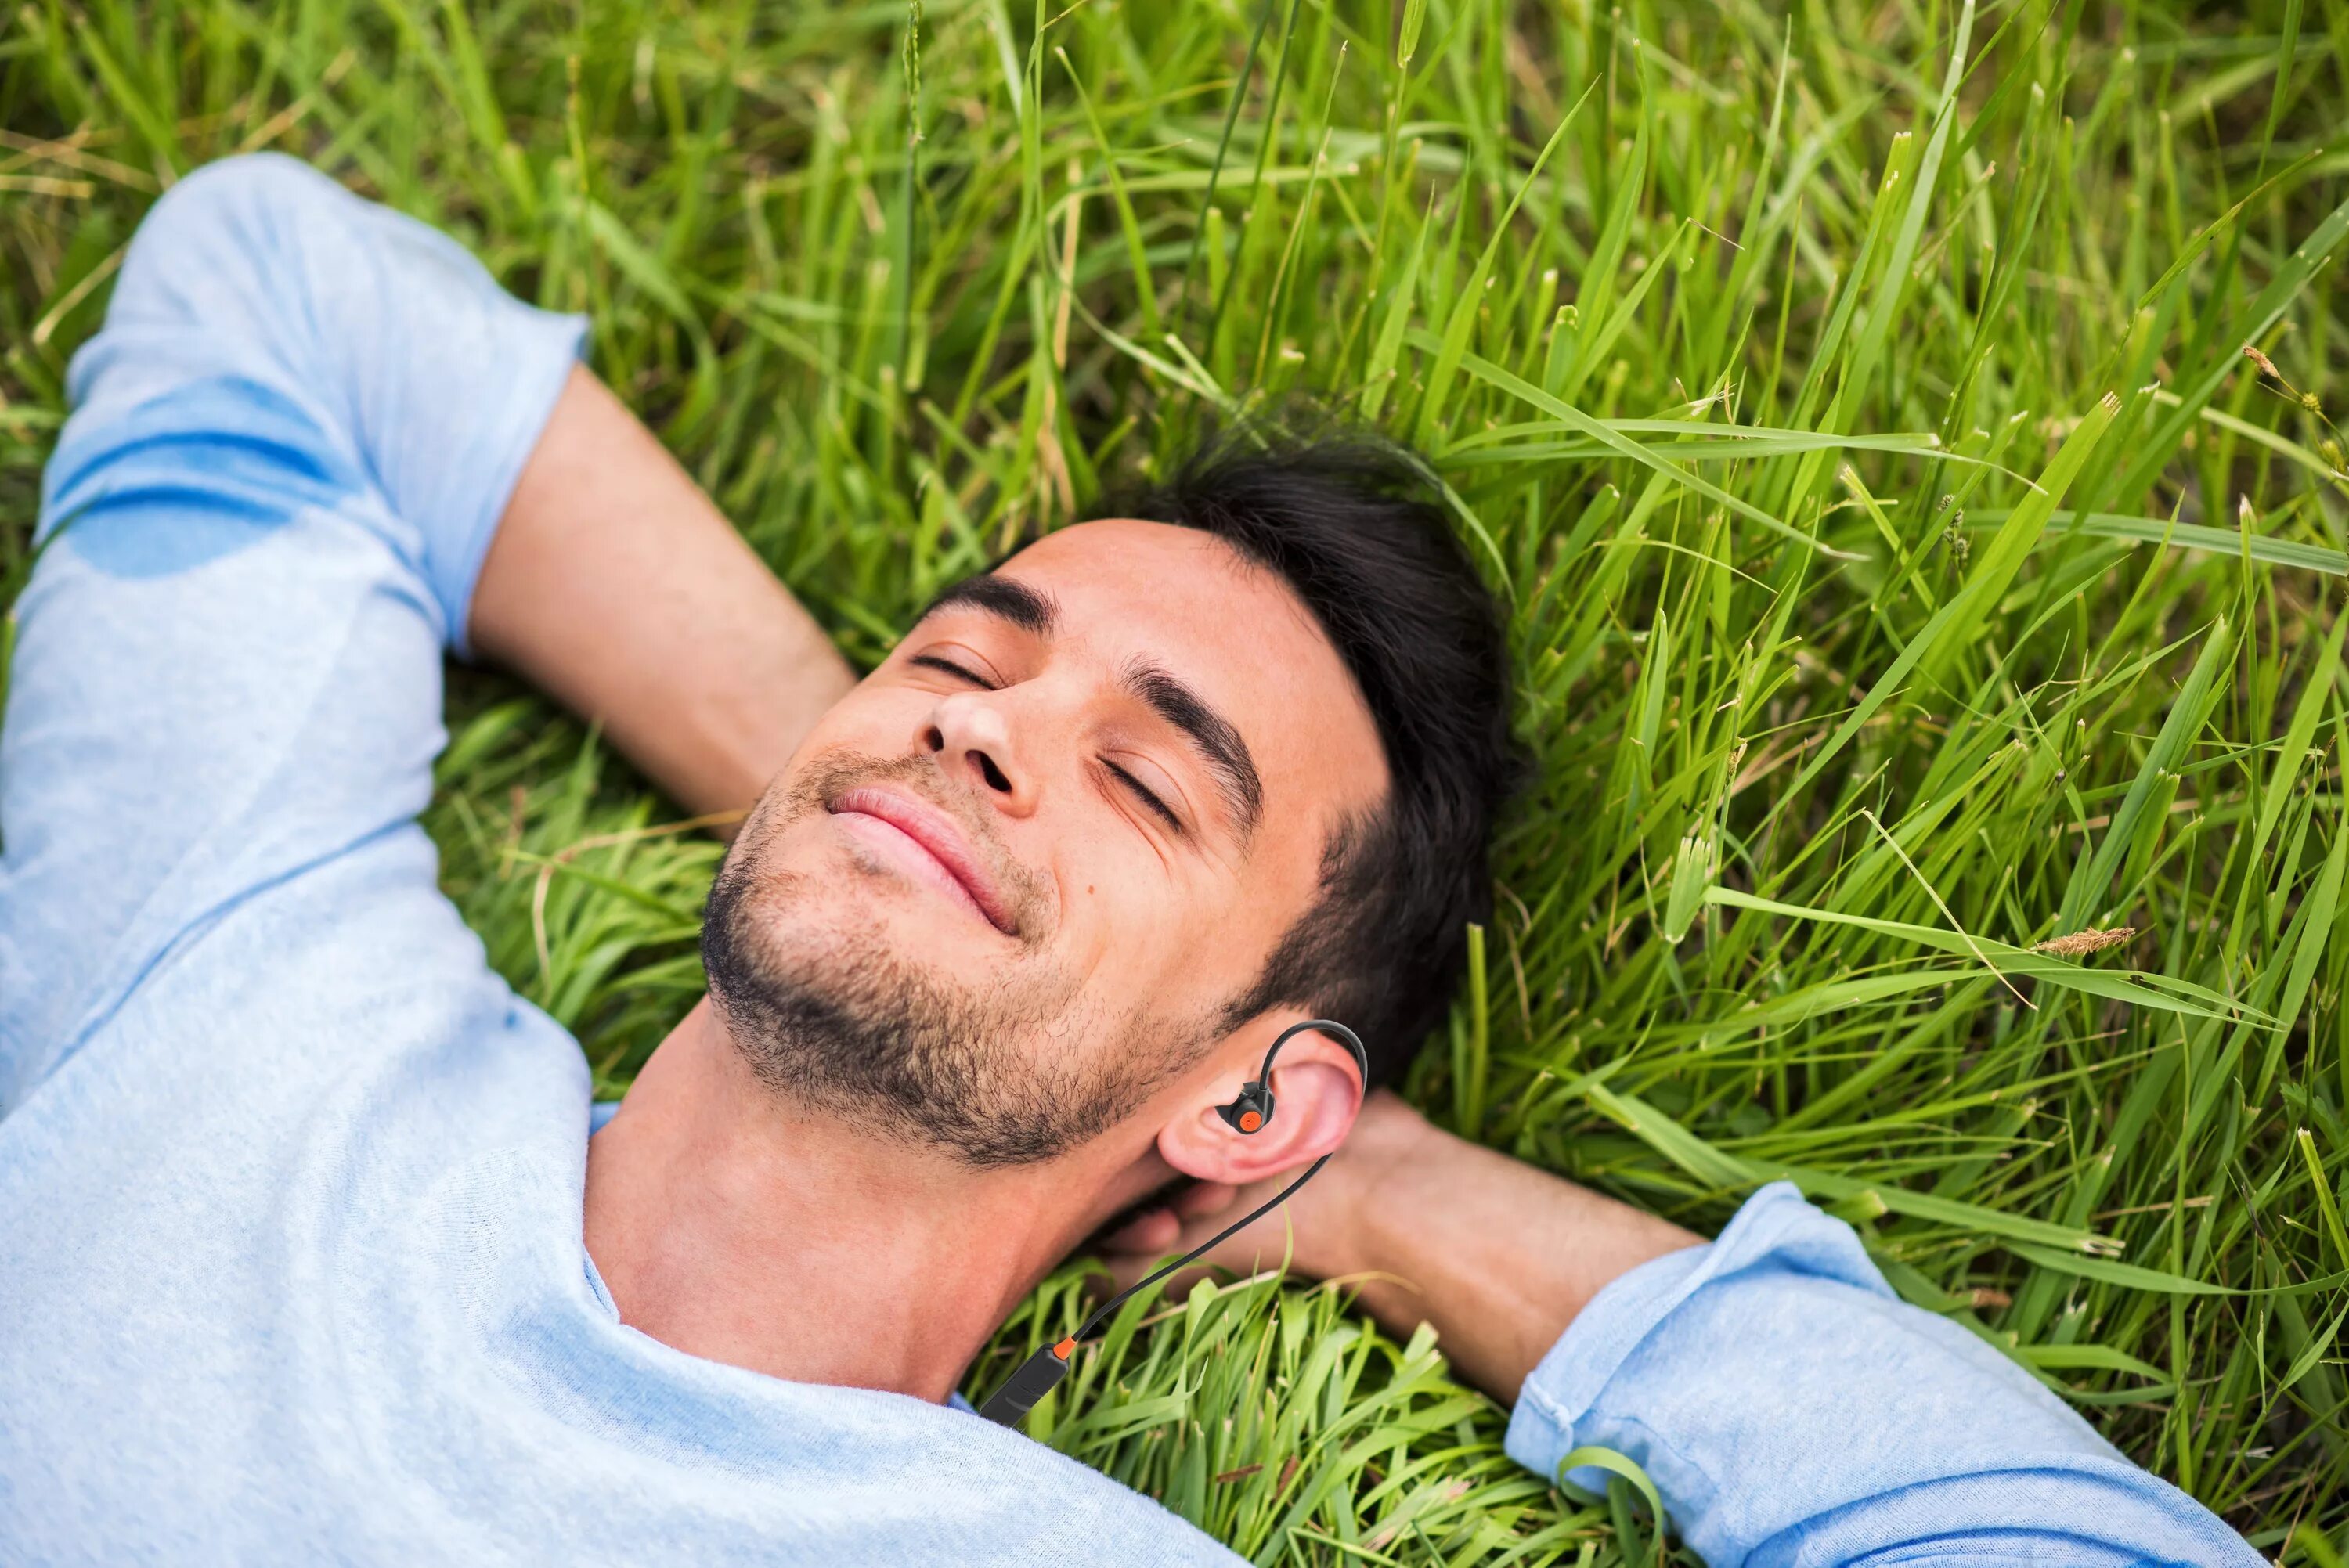 Счастливый человек с закрытыми глазами. Счастливый мужчина. Мужчина лежит с закрытыми глазами. Парень улыбается на траве. Rest man